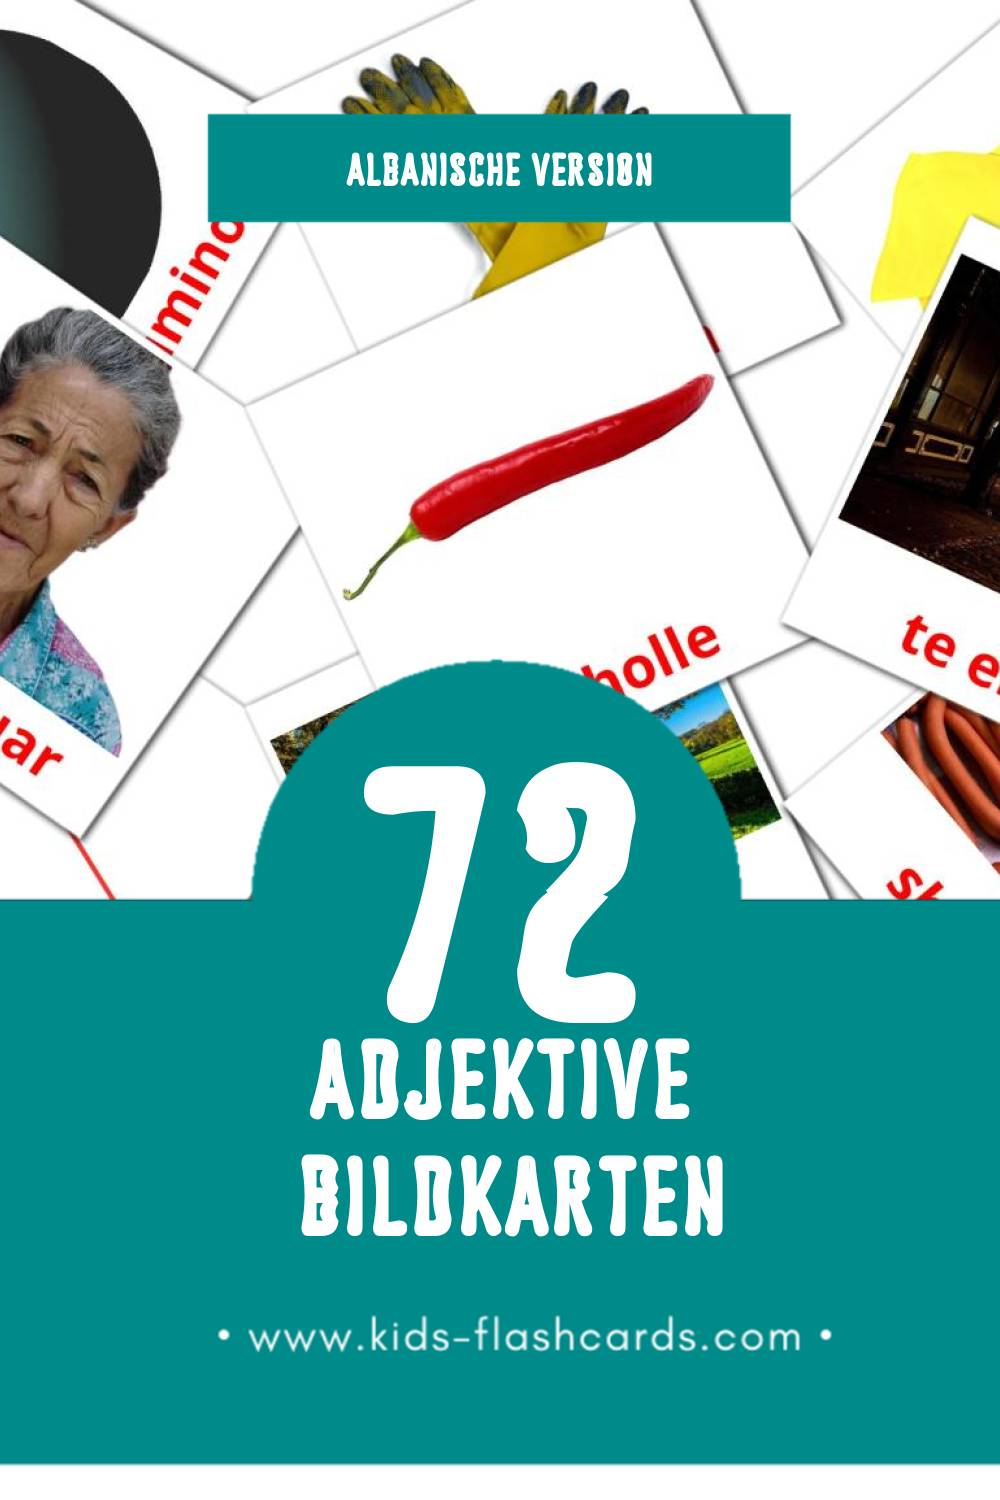 Visual Te kundertat Flashcards für Kleinkinder (74 Karten in Albanisch)